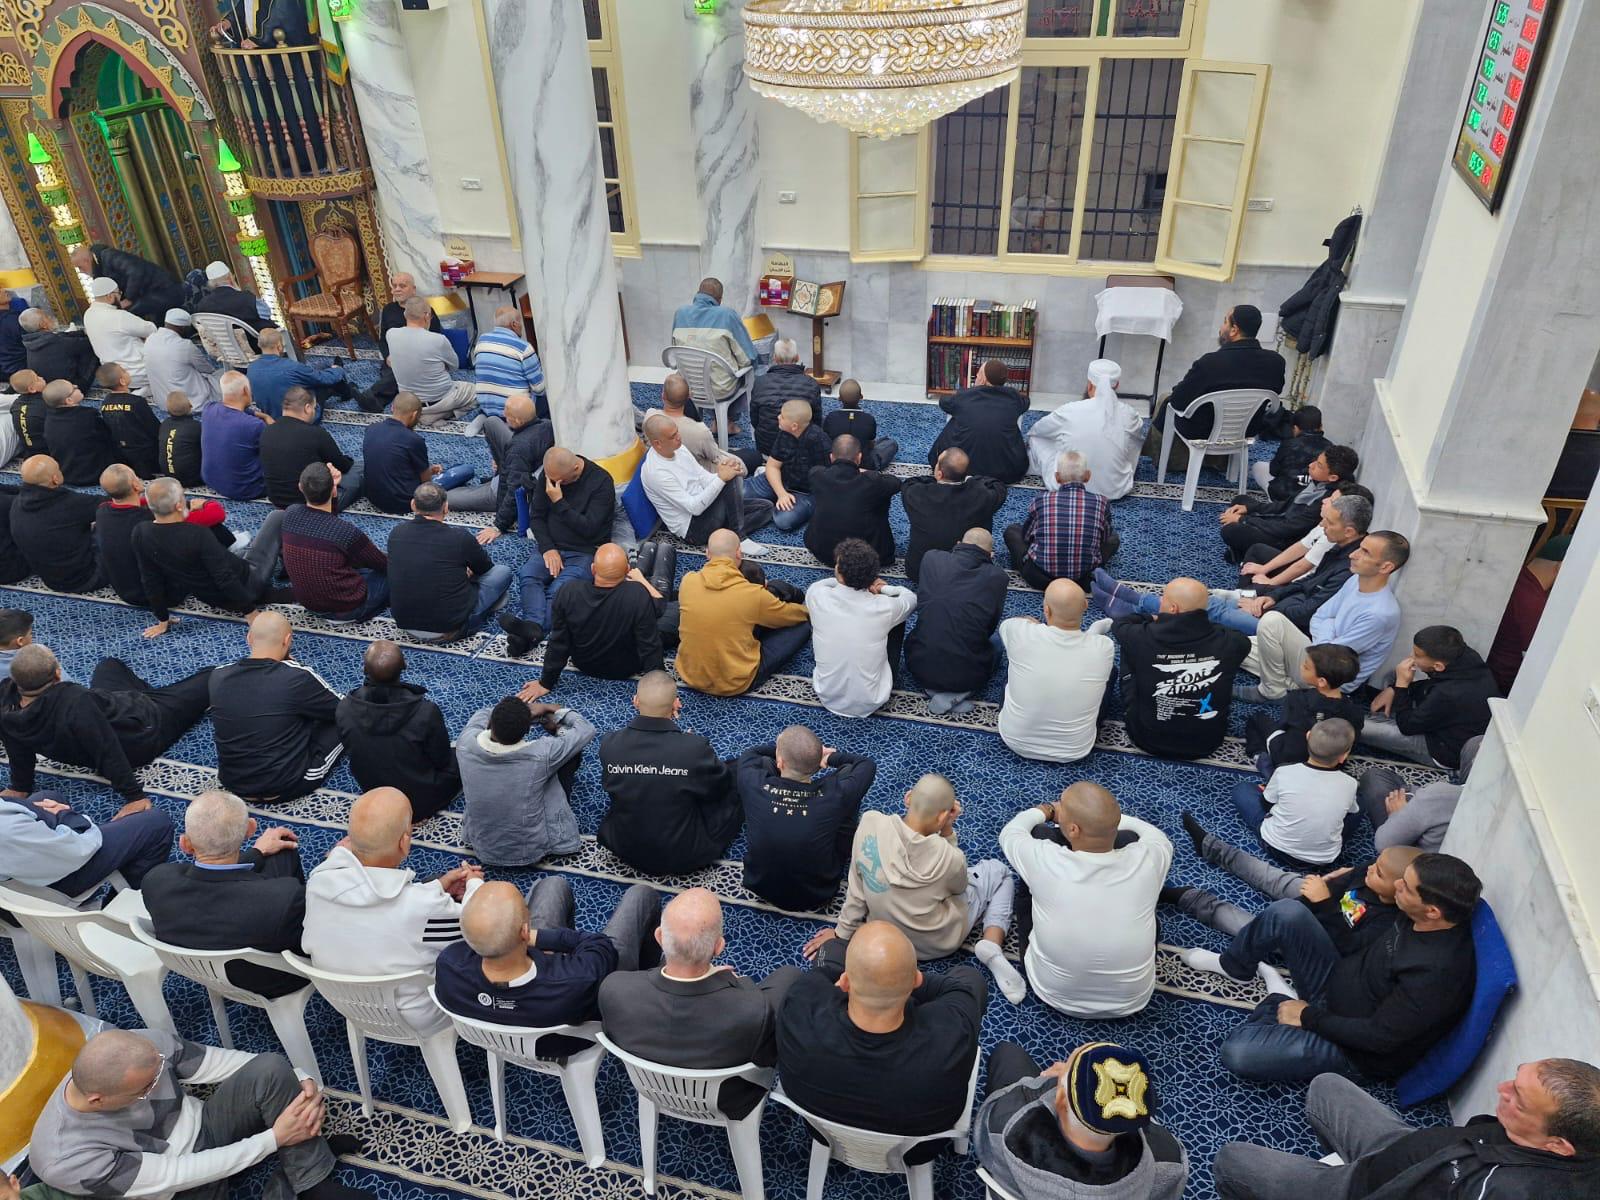 بالصور: صلاة وخطبة عيد الفطر في مسجد النزهة بمدينة يافا 